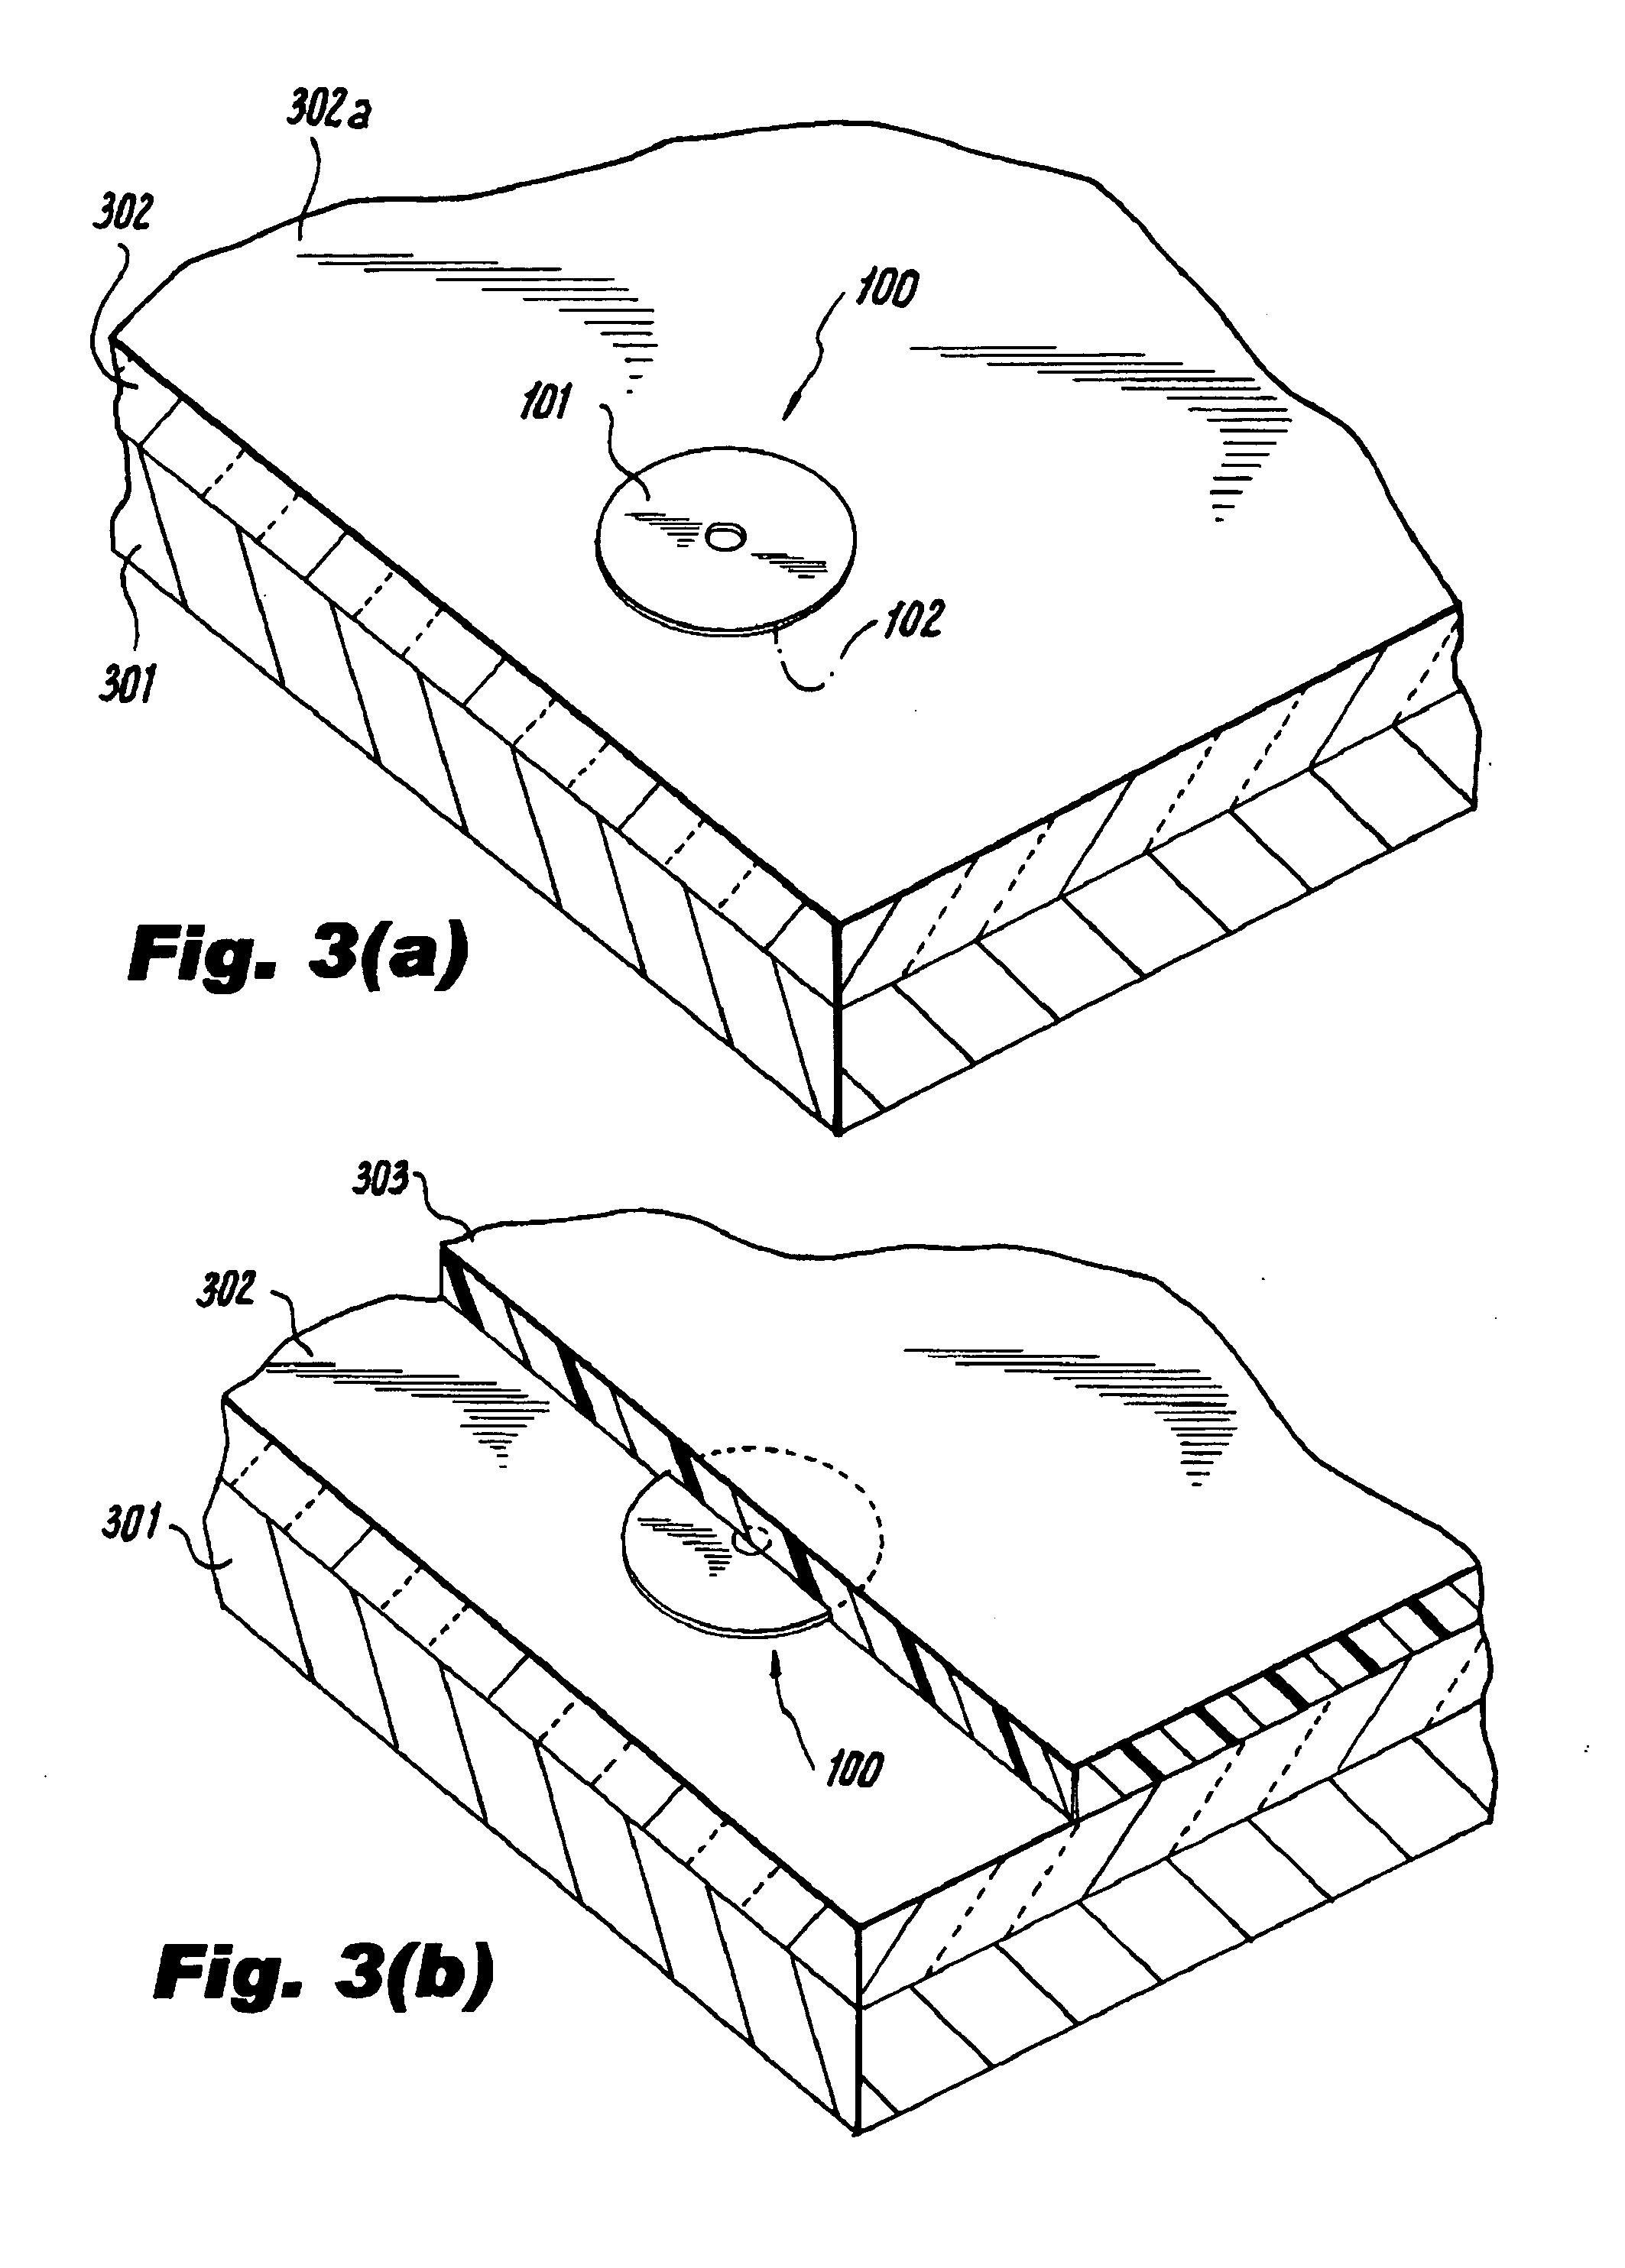 Self-stick metal plate and method of applying the same